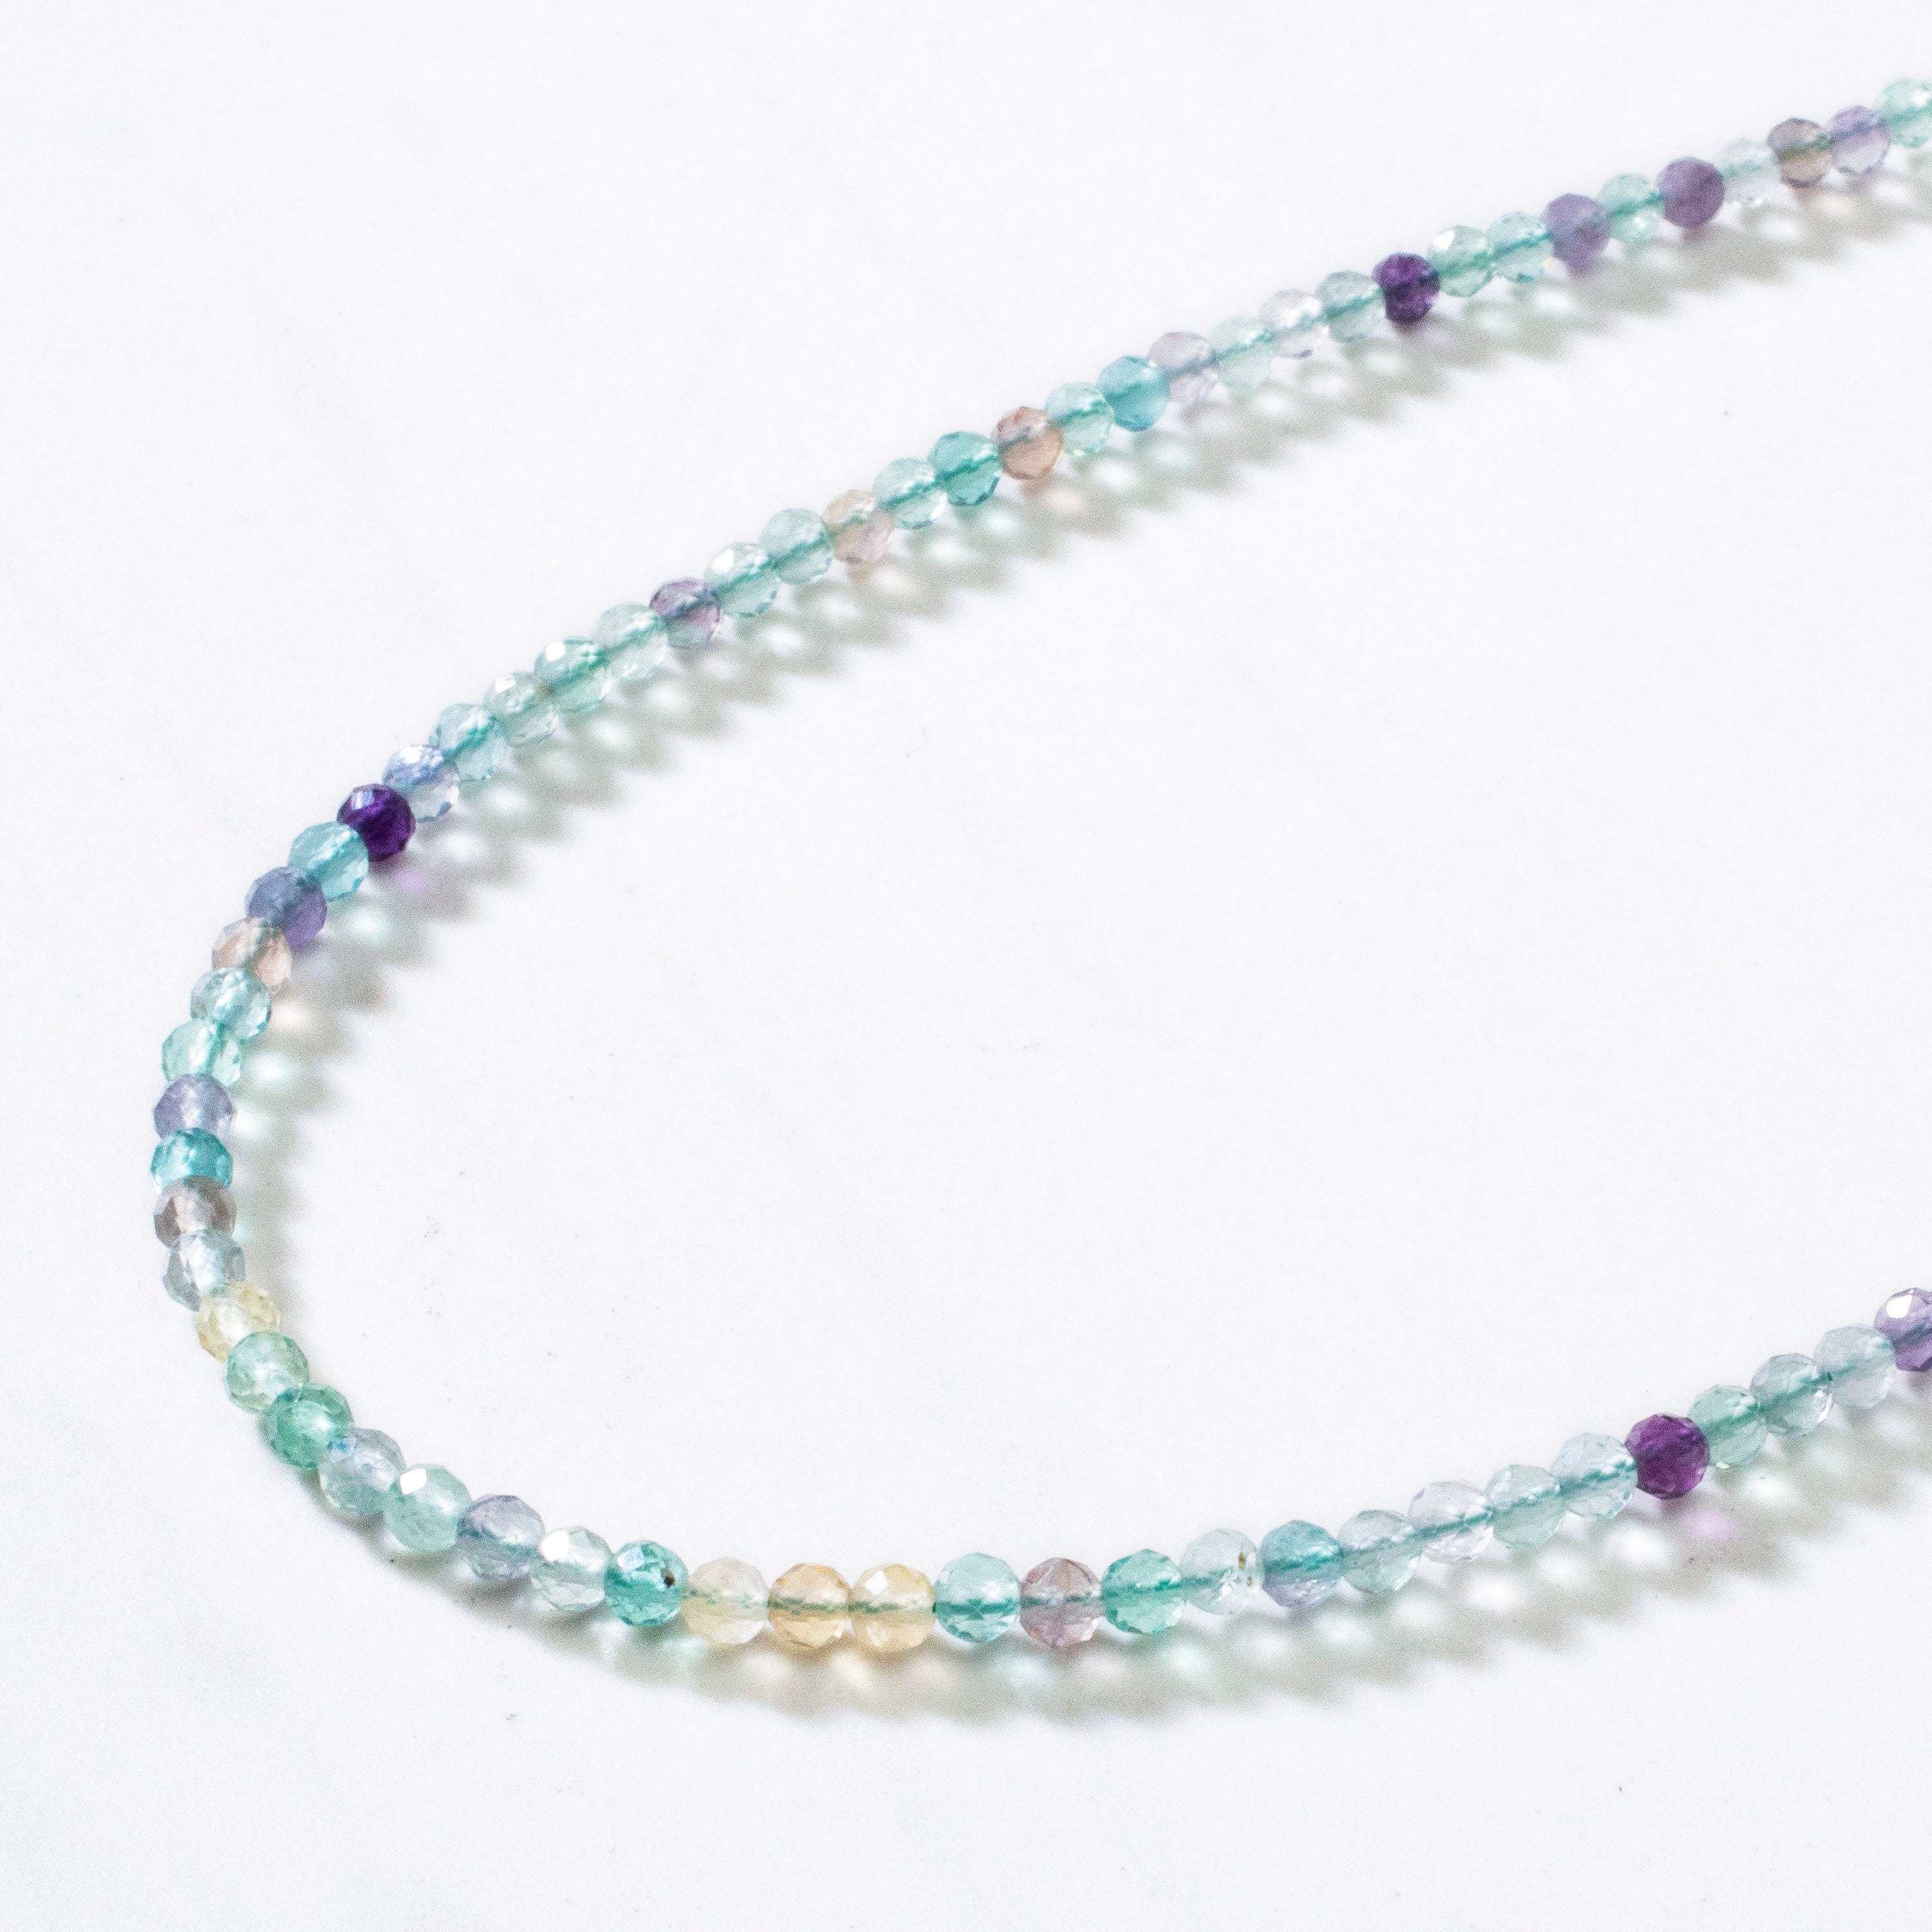 KALIFANO Gemstone Jewelry 3mm Fluorite Faceted 31" Necklace / Multi Wrap Bracelet N3-79S-FL